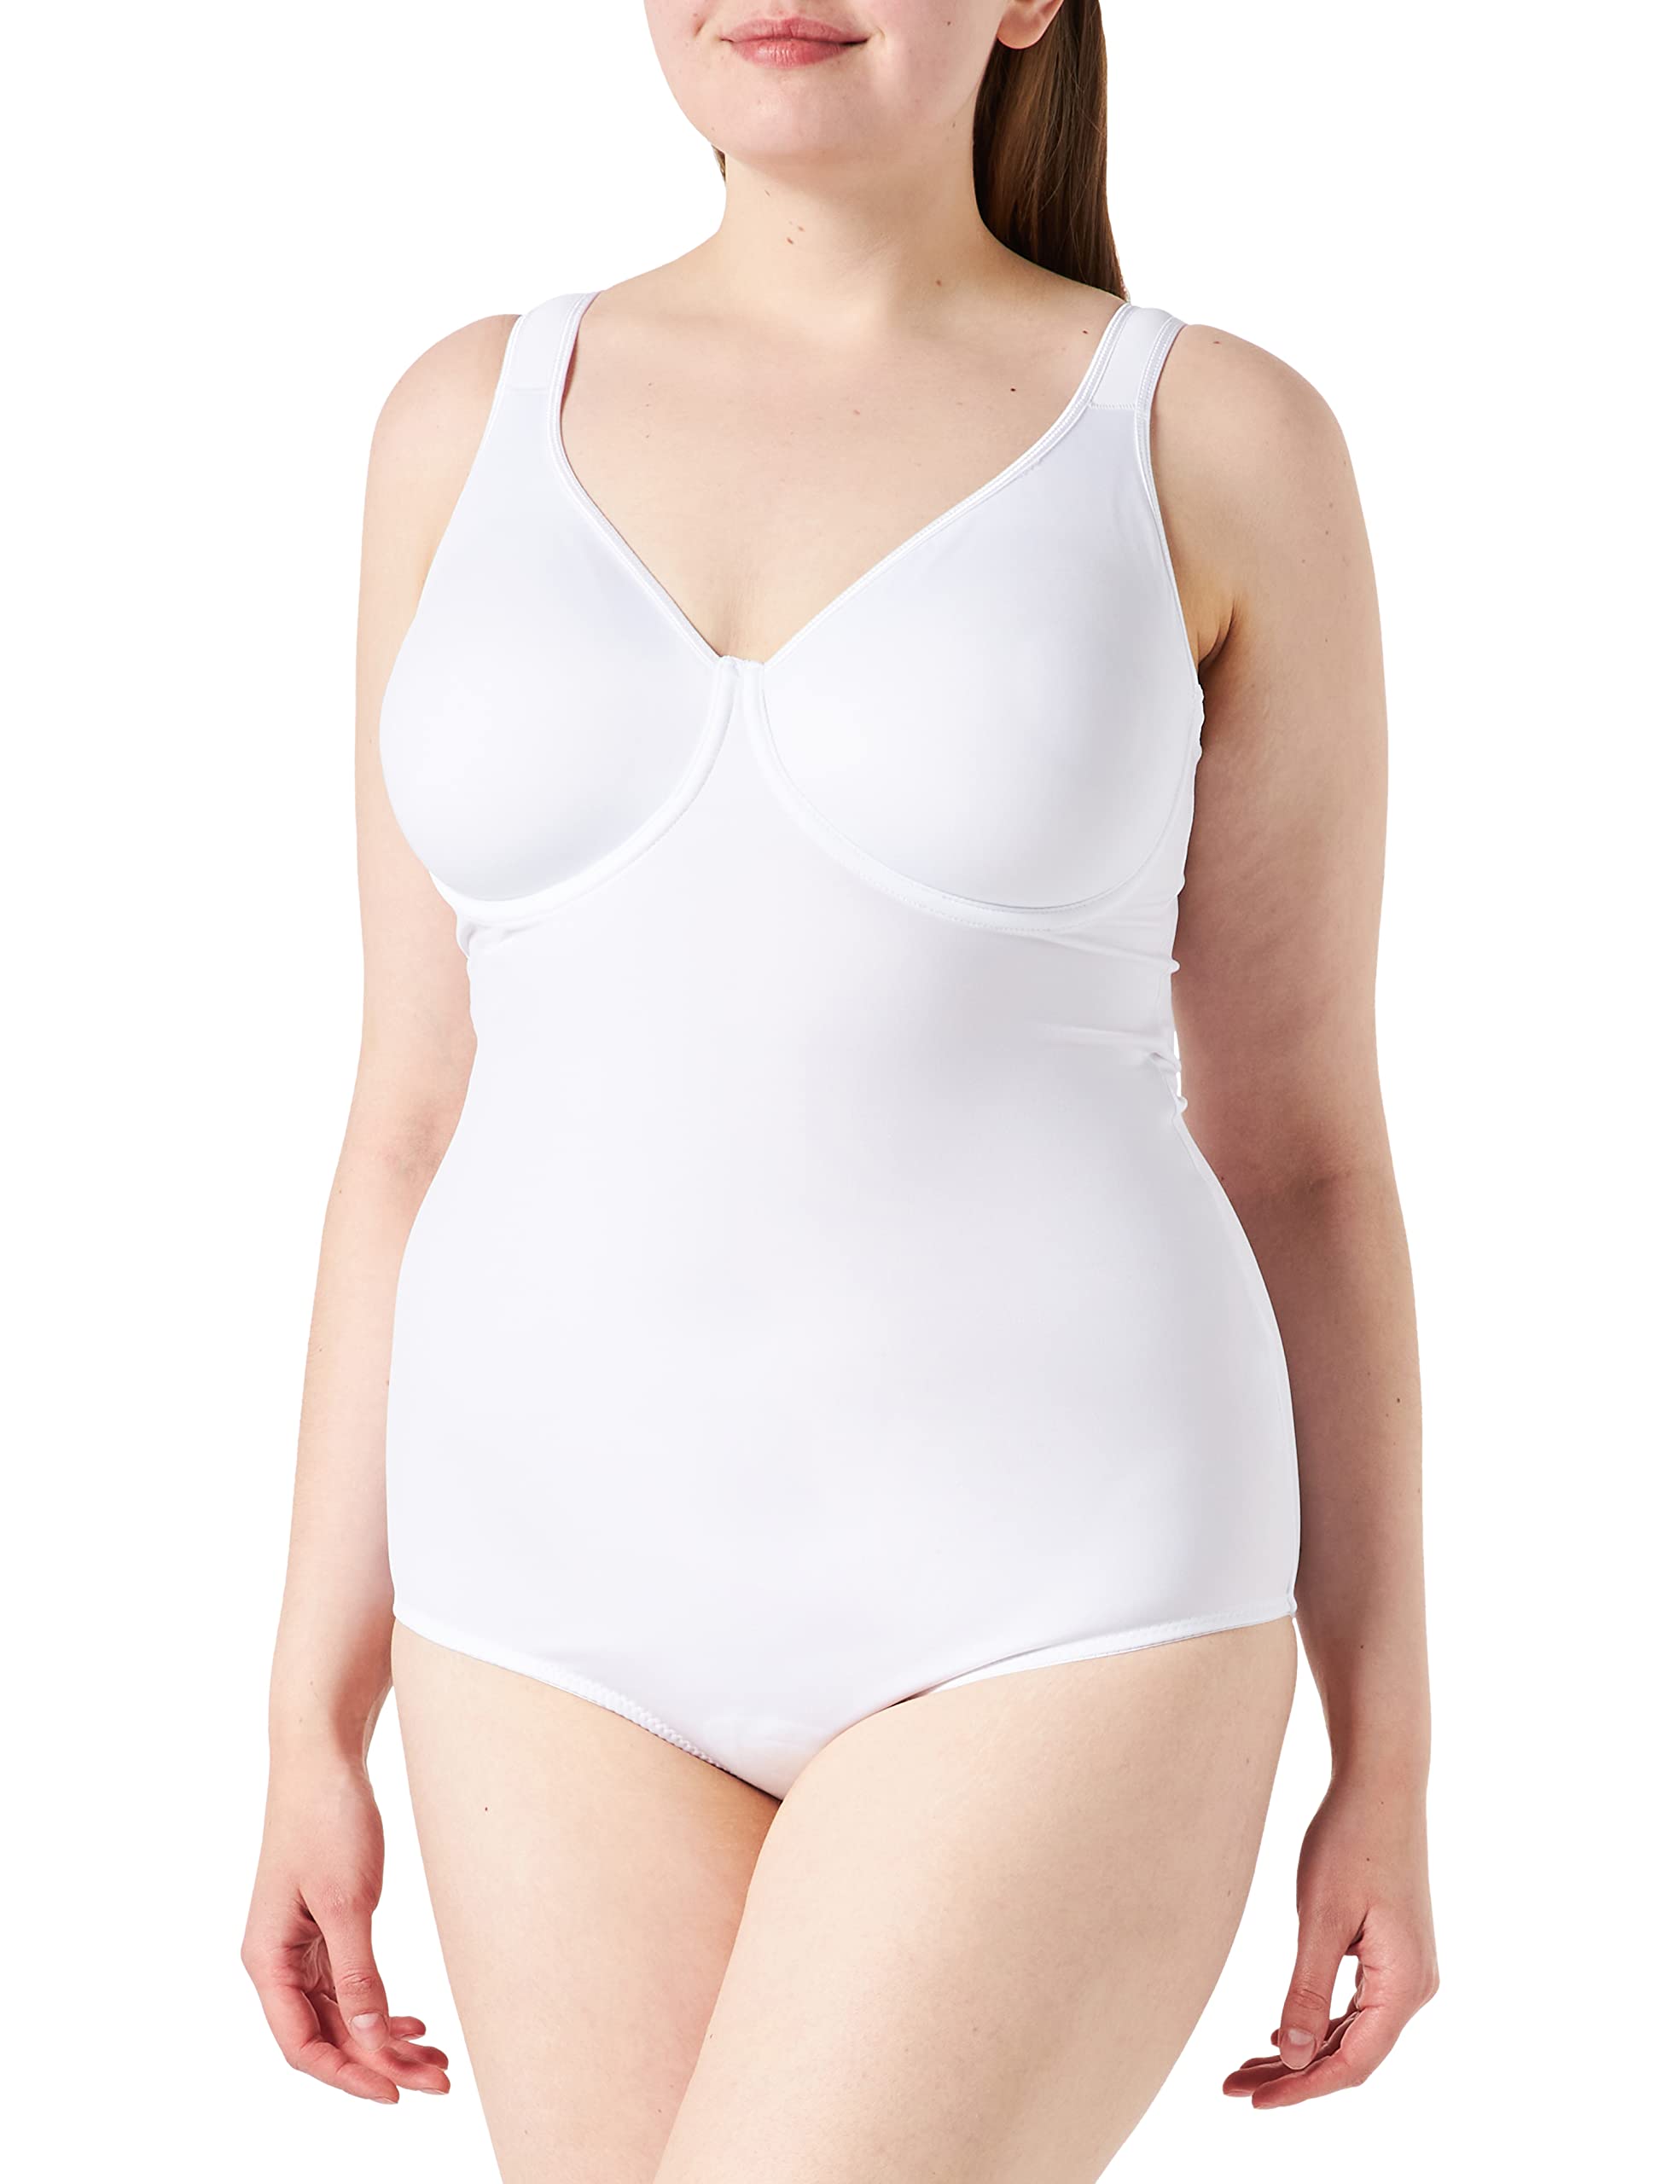 Sassa Damen Formender Body doppelt vorgeformt 00903, Einfarbig, Gr. 90B, Weiß (Weiß 00100)